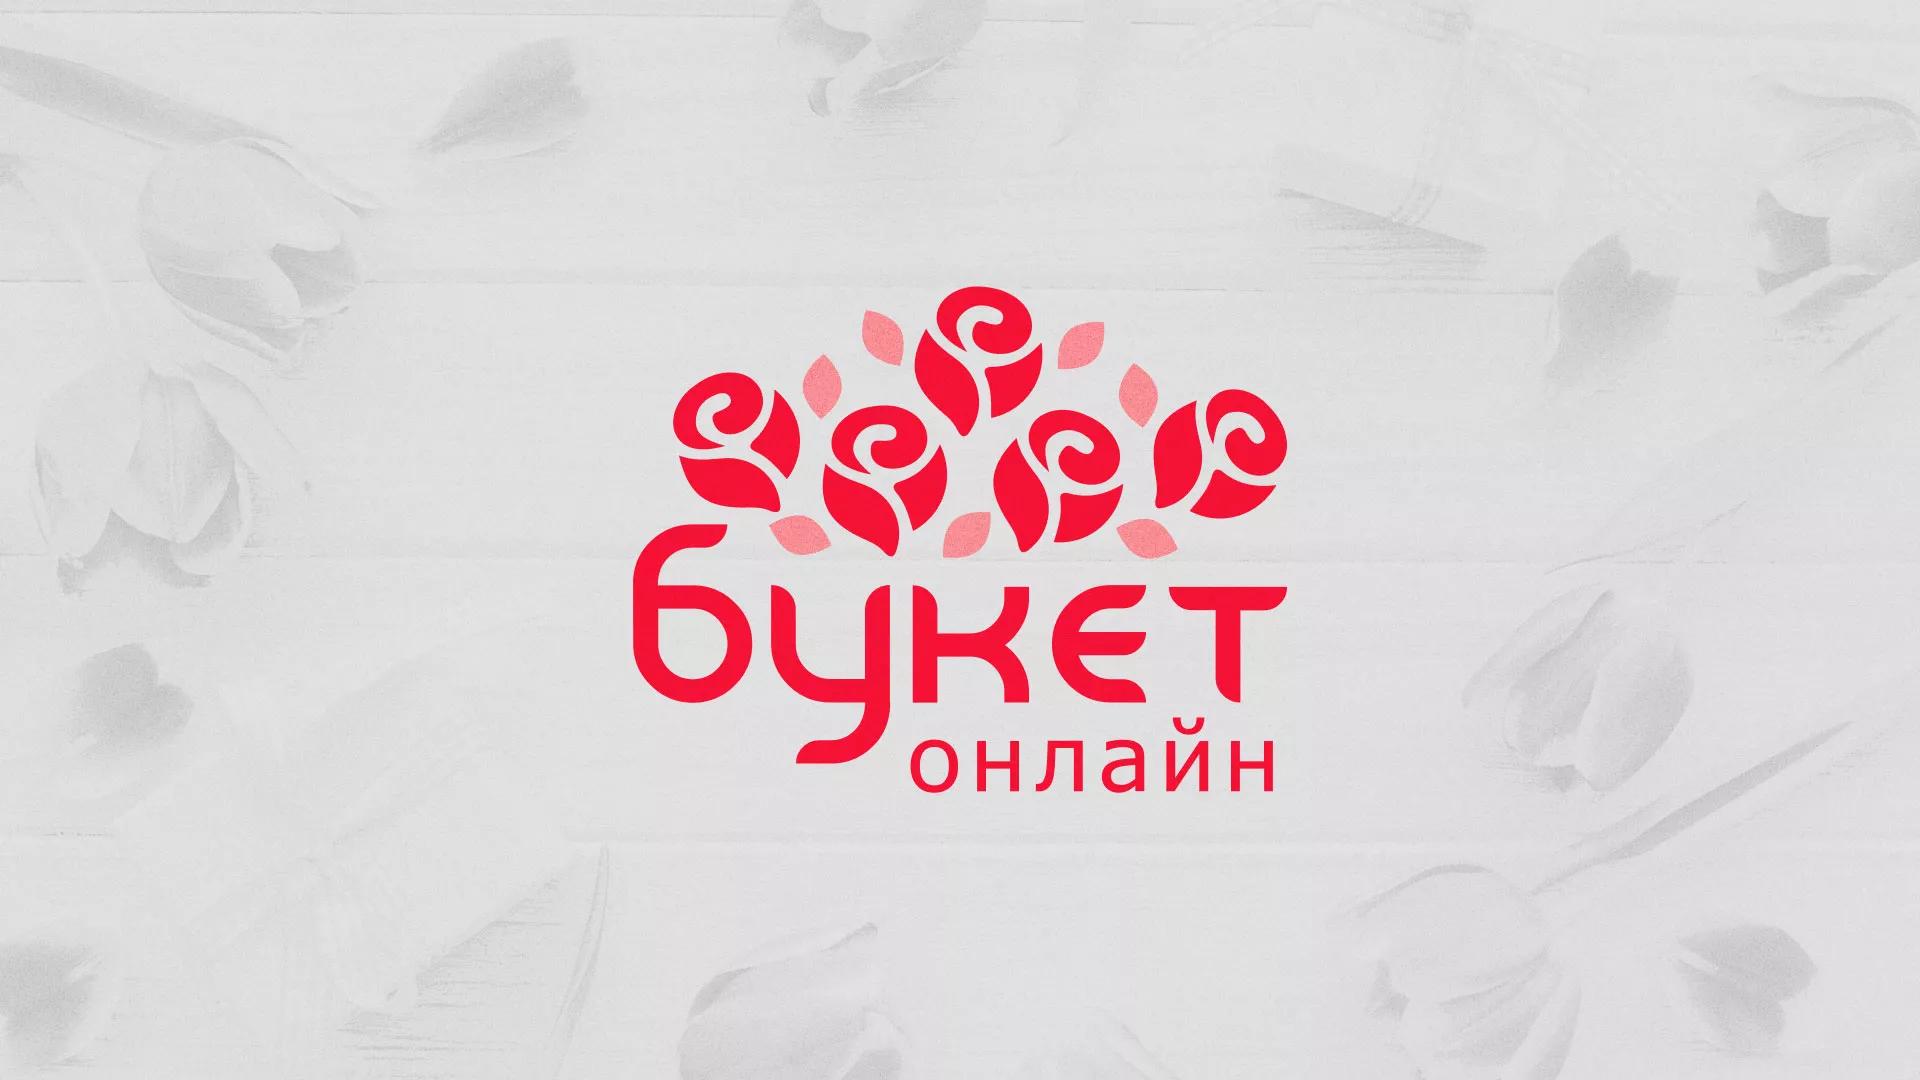 Создание интернет-магазина «Букет-онлайн» по цветам в Олонце